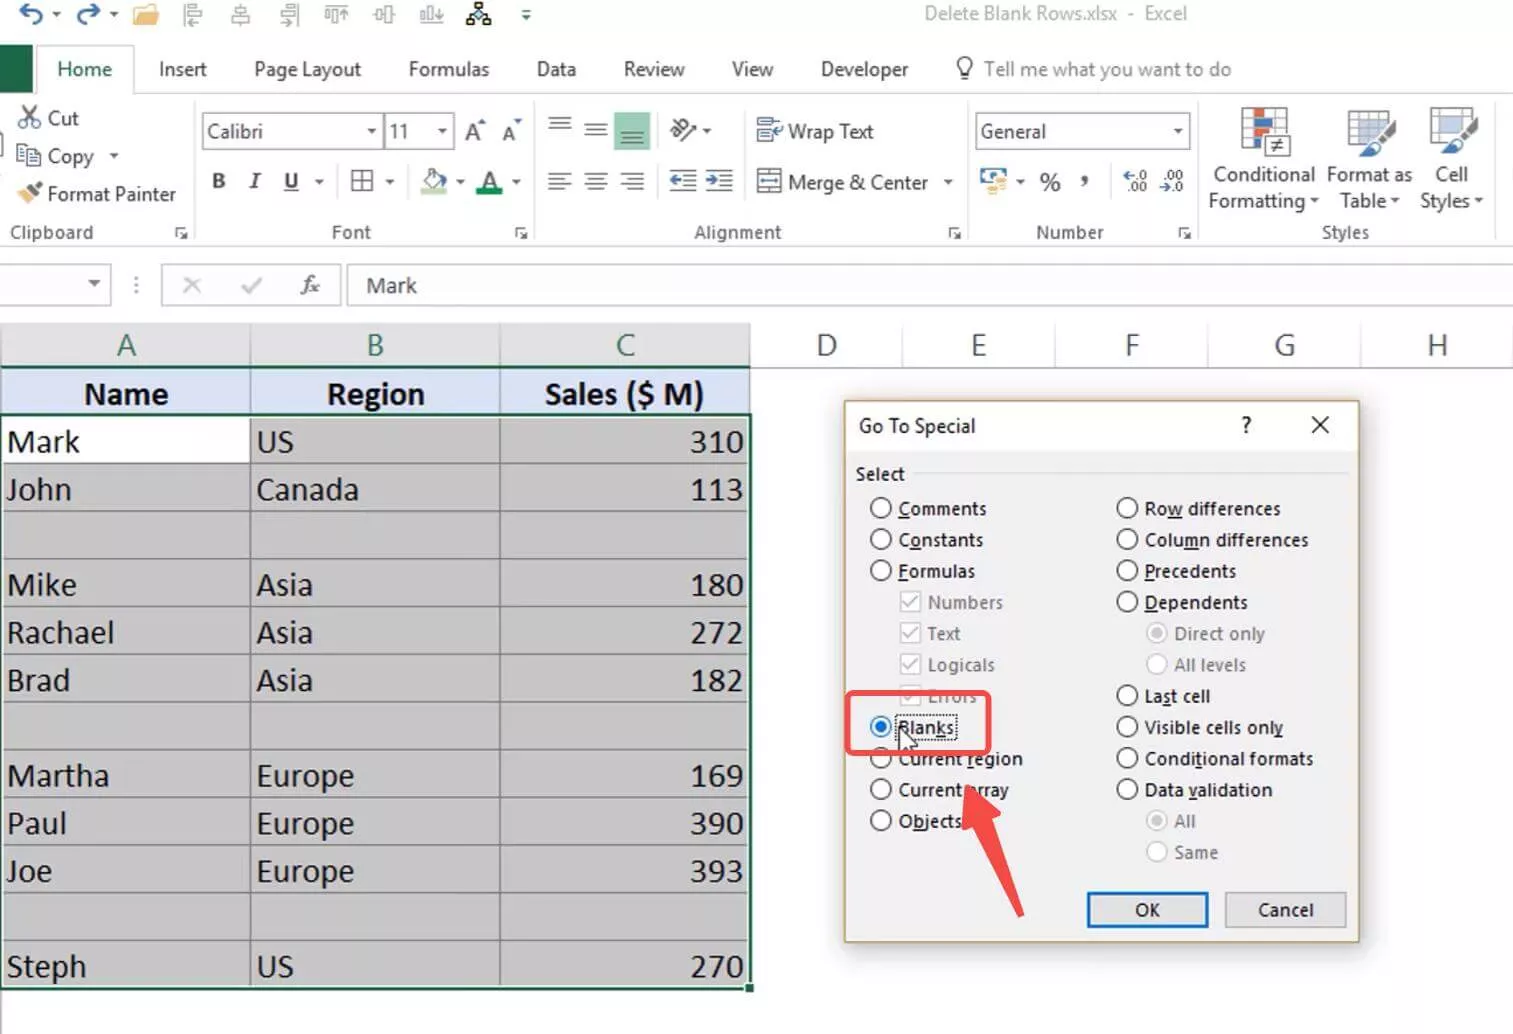 Leere Zeilen nach Gehe zu Spezial in Excel auswählen, um leere Zeilen in Excel zu entfernen